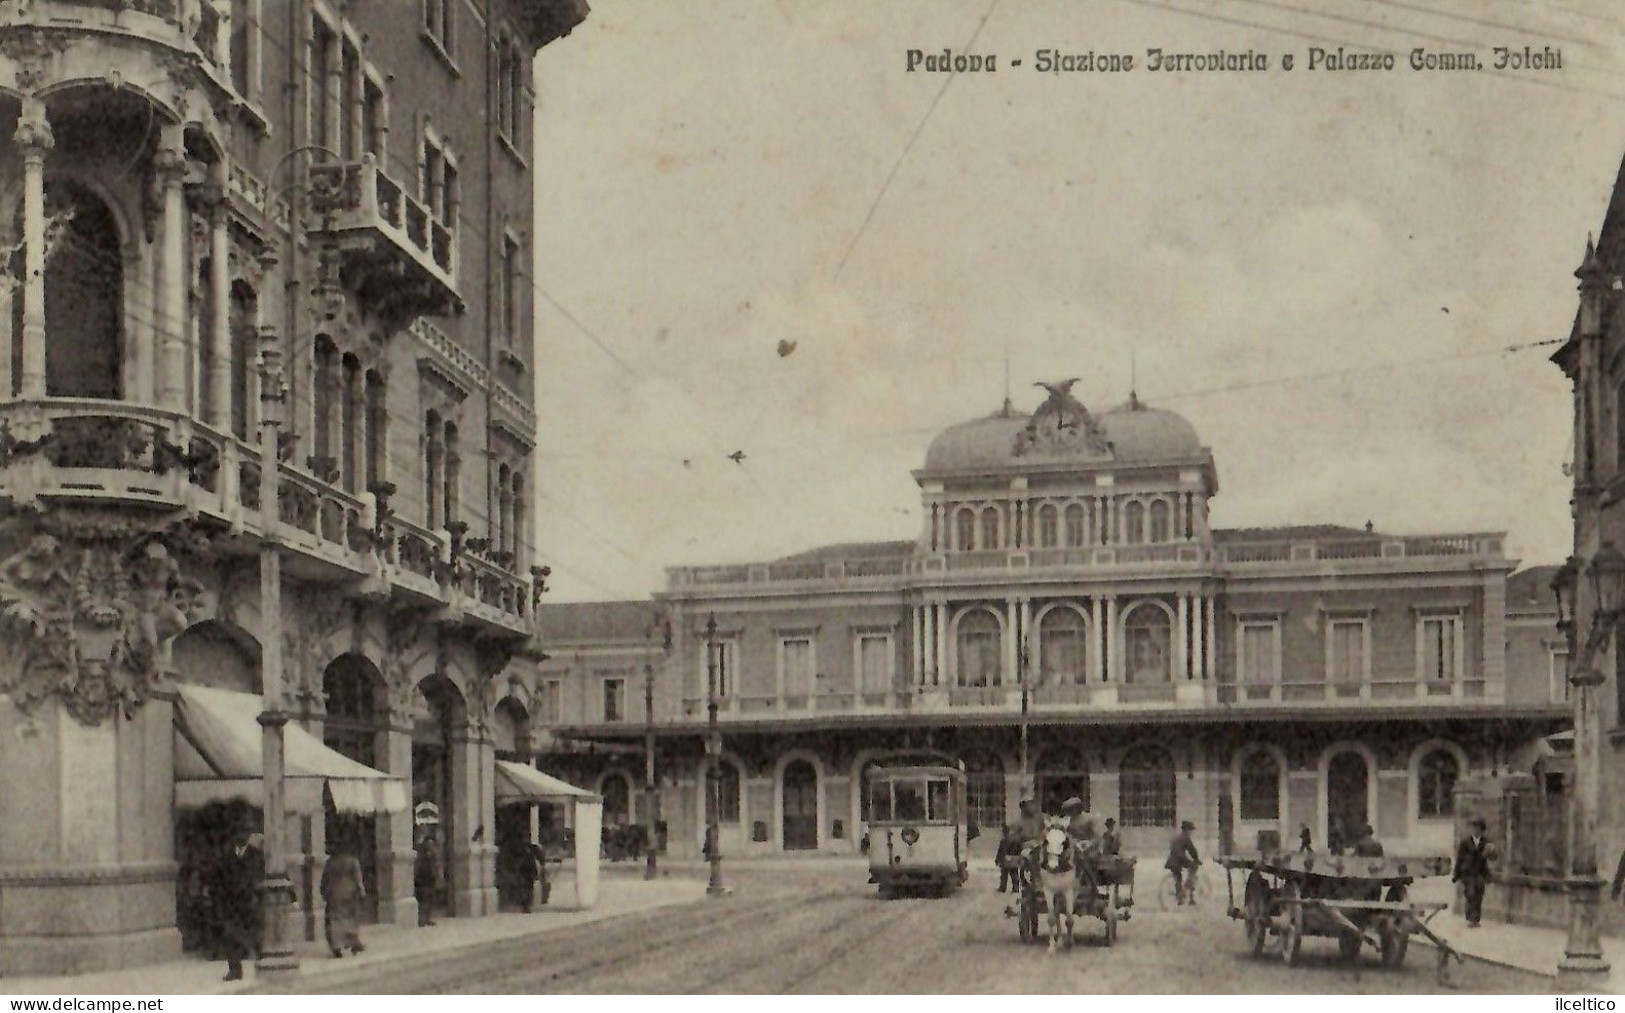 PADOVA - STAZIONE  FERROVIARIA - PALAZZO  COMM. FOLCHI - - Padova (Padua)